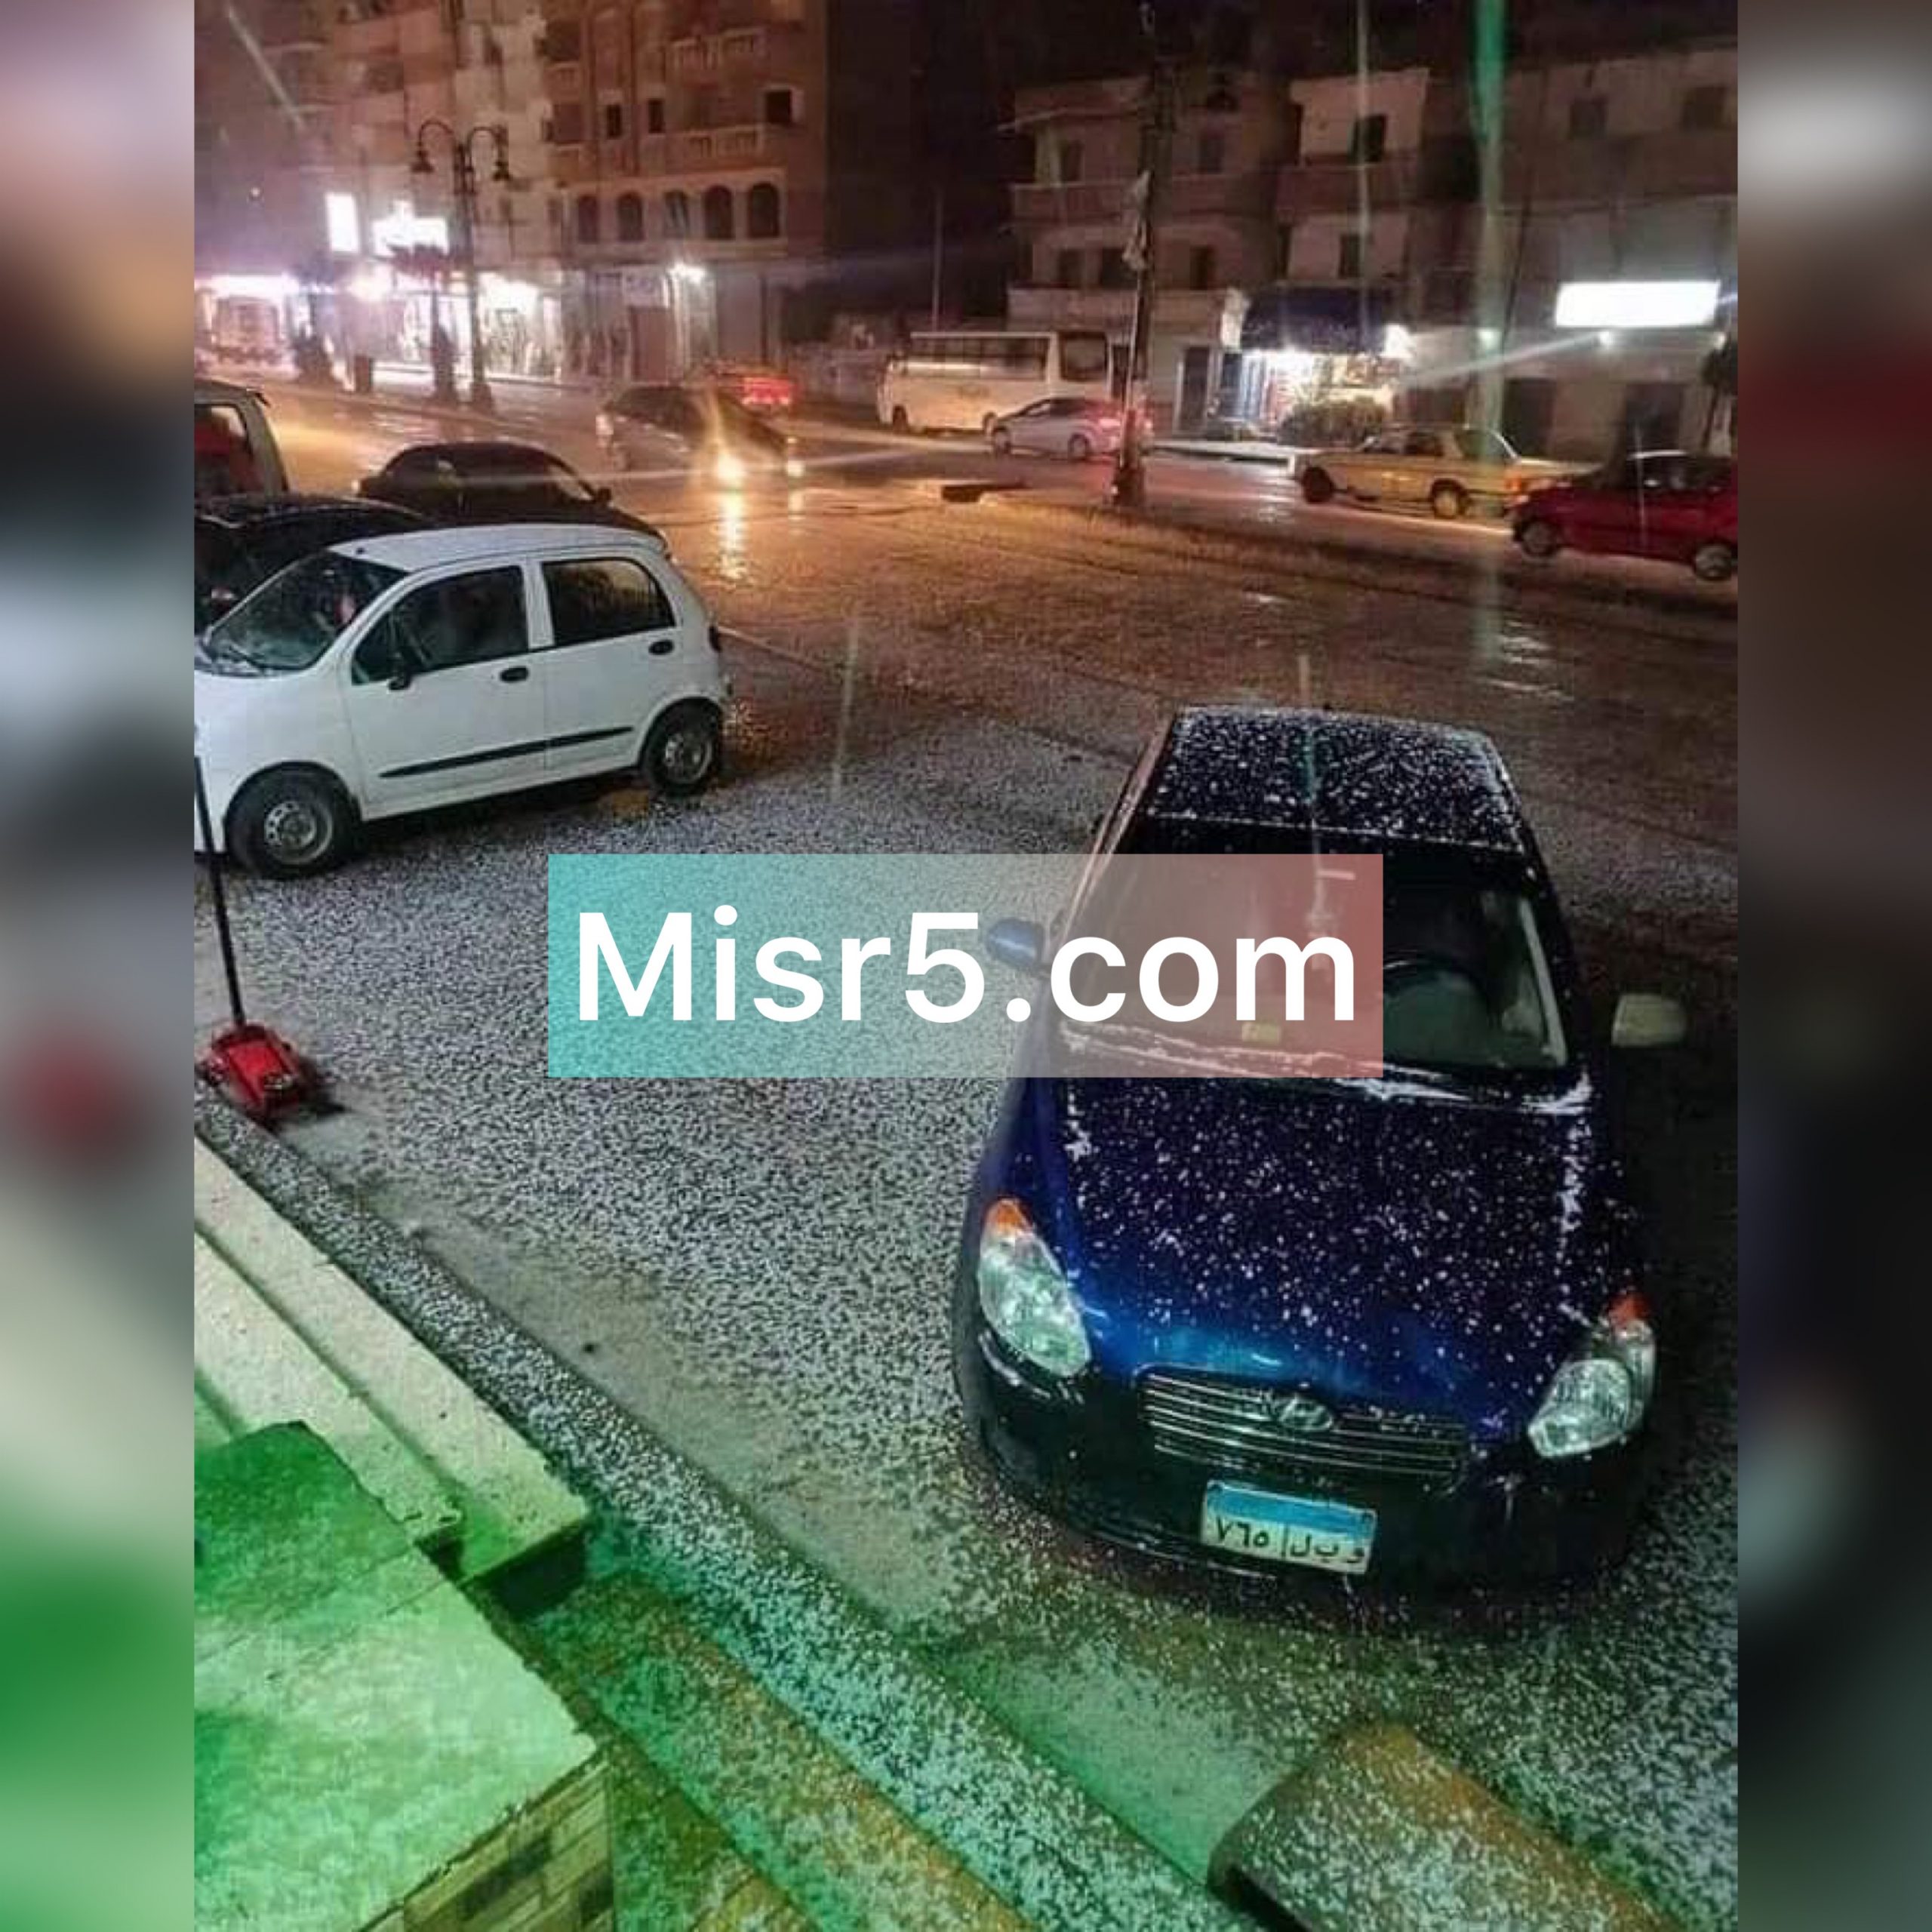 بالصور| اليوم الأول لحالة عدم استقرار الطقس في الإسكندرية تتزين بتساقط الثلوج